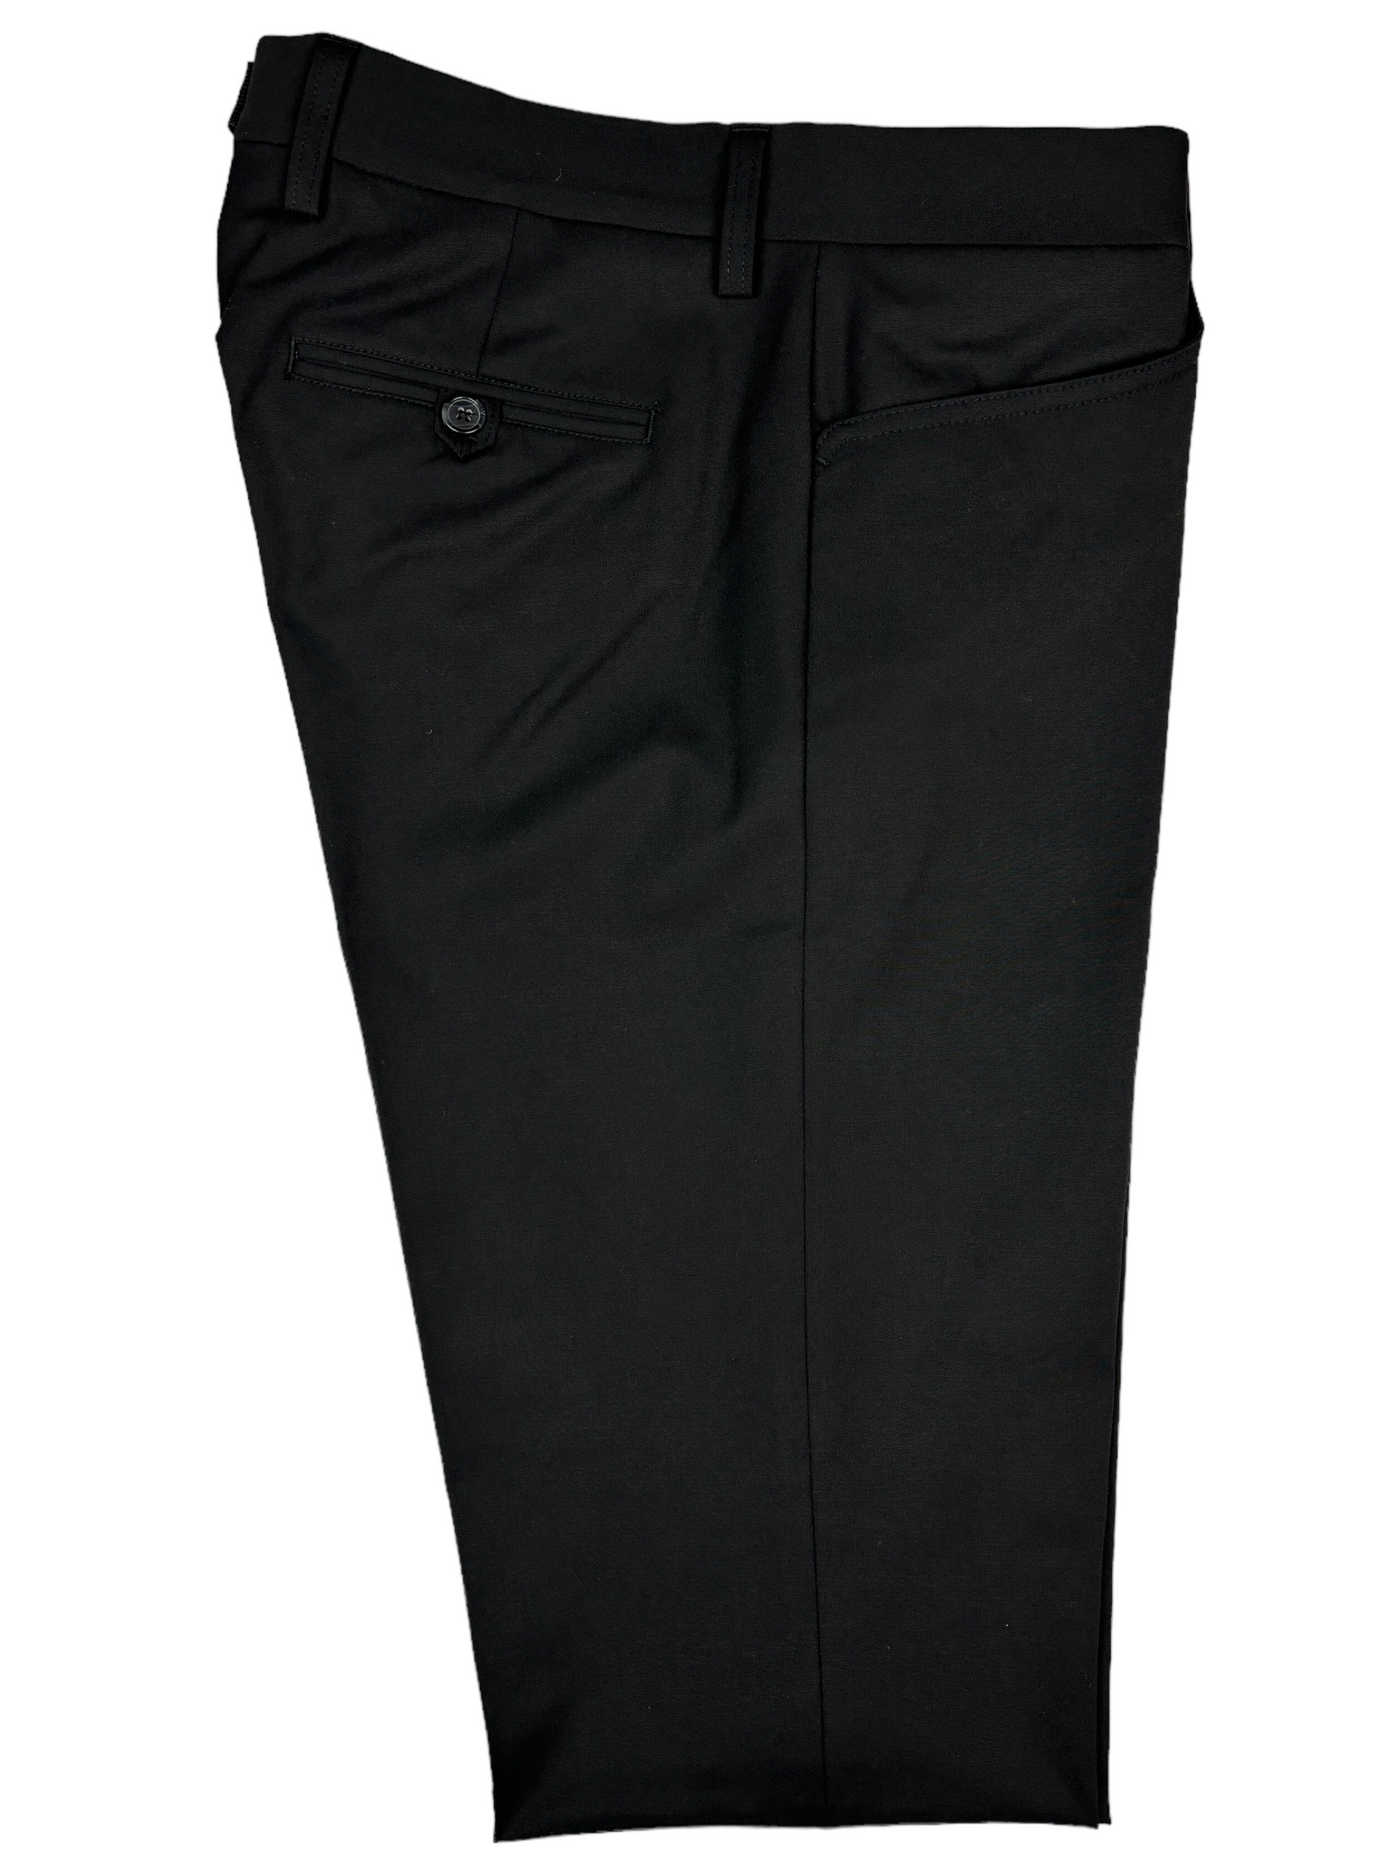 Pantalon habillé extensible noir